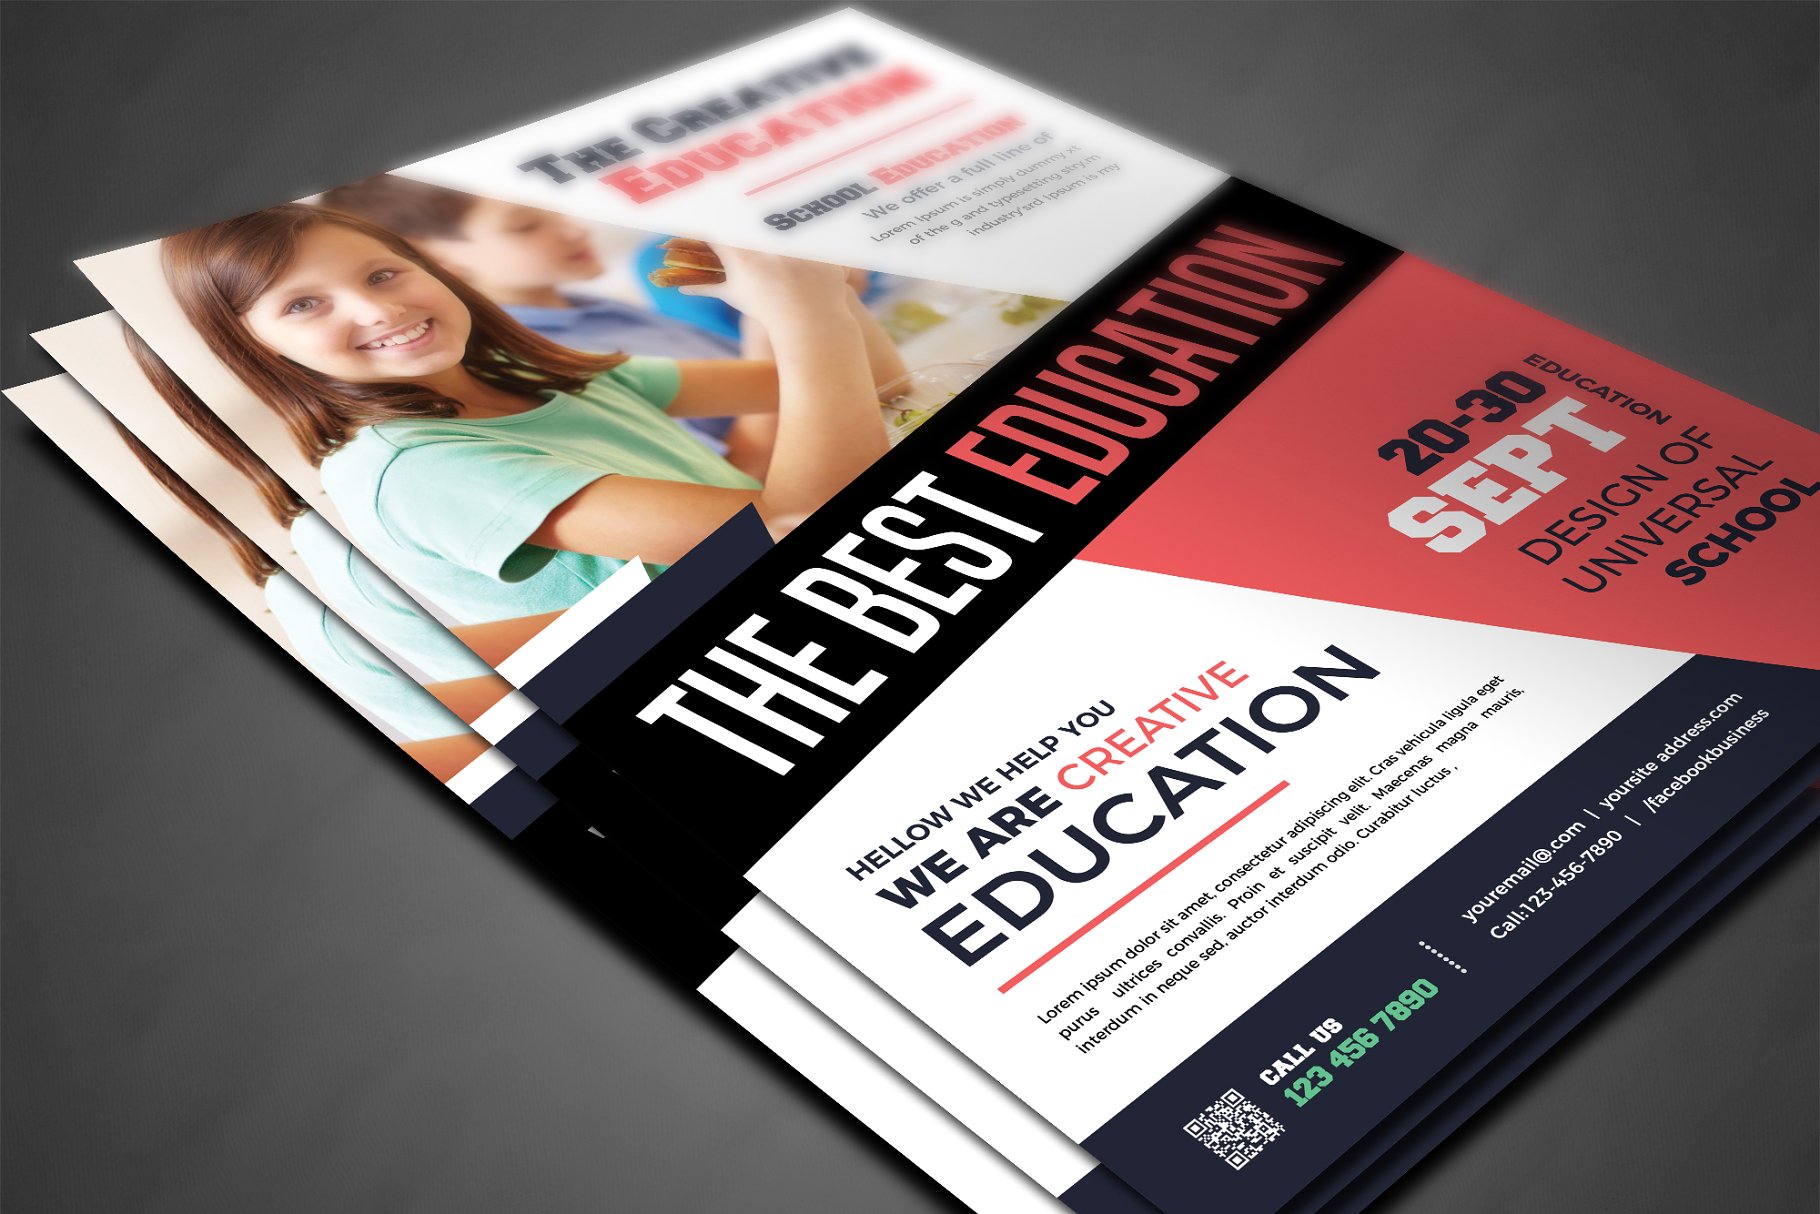 校园教育主题海报设计模板 School Education Flyer Templates插图(2)